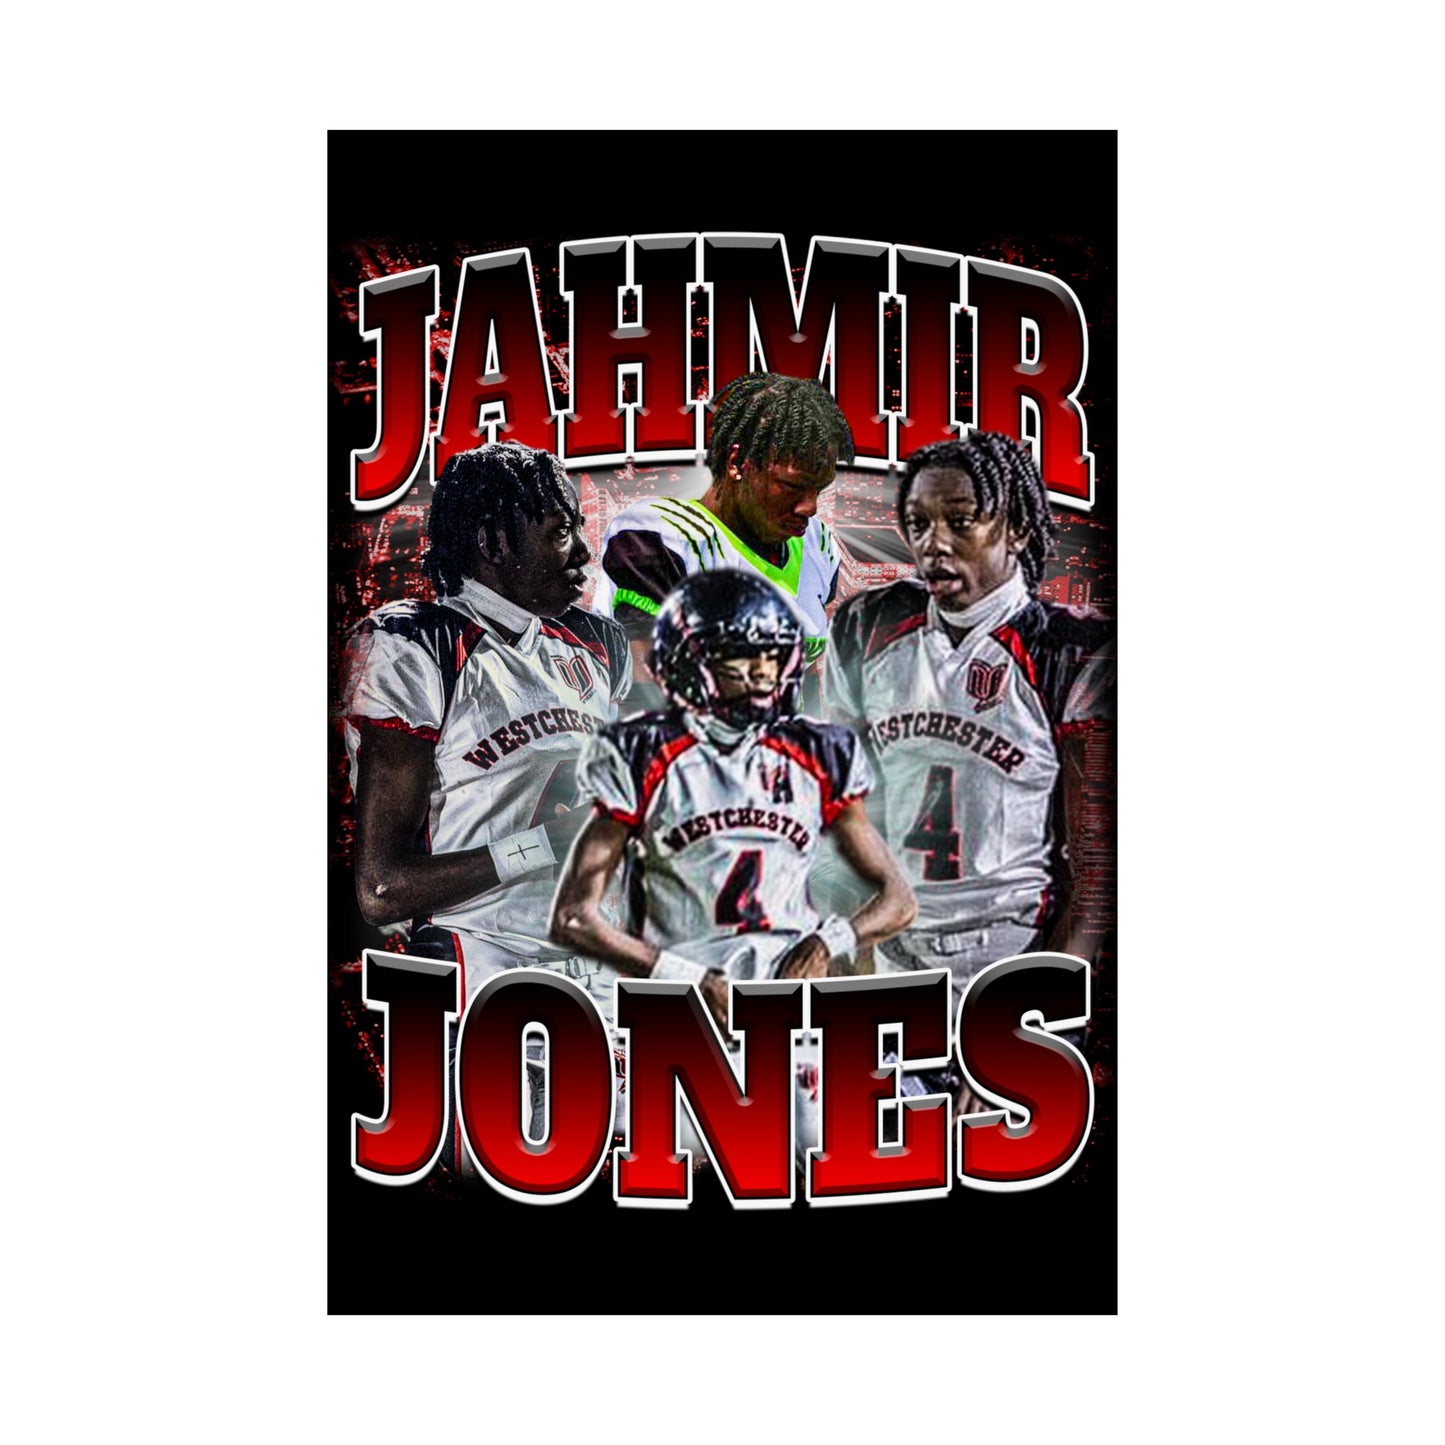 Jahmir Jones Poster 24" x 36"